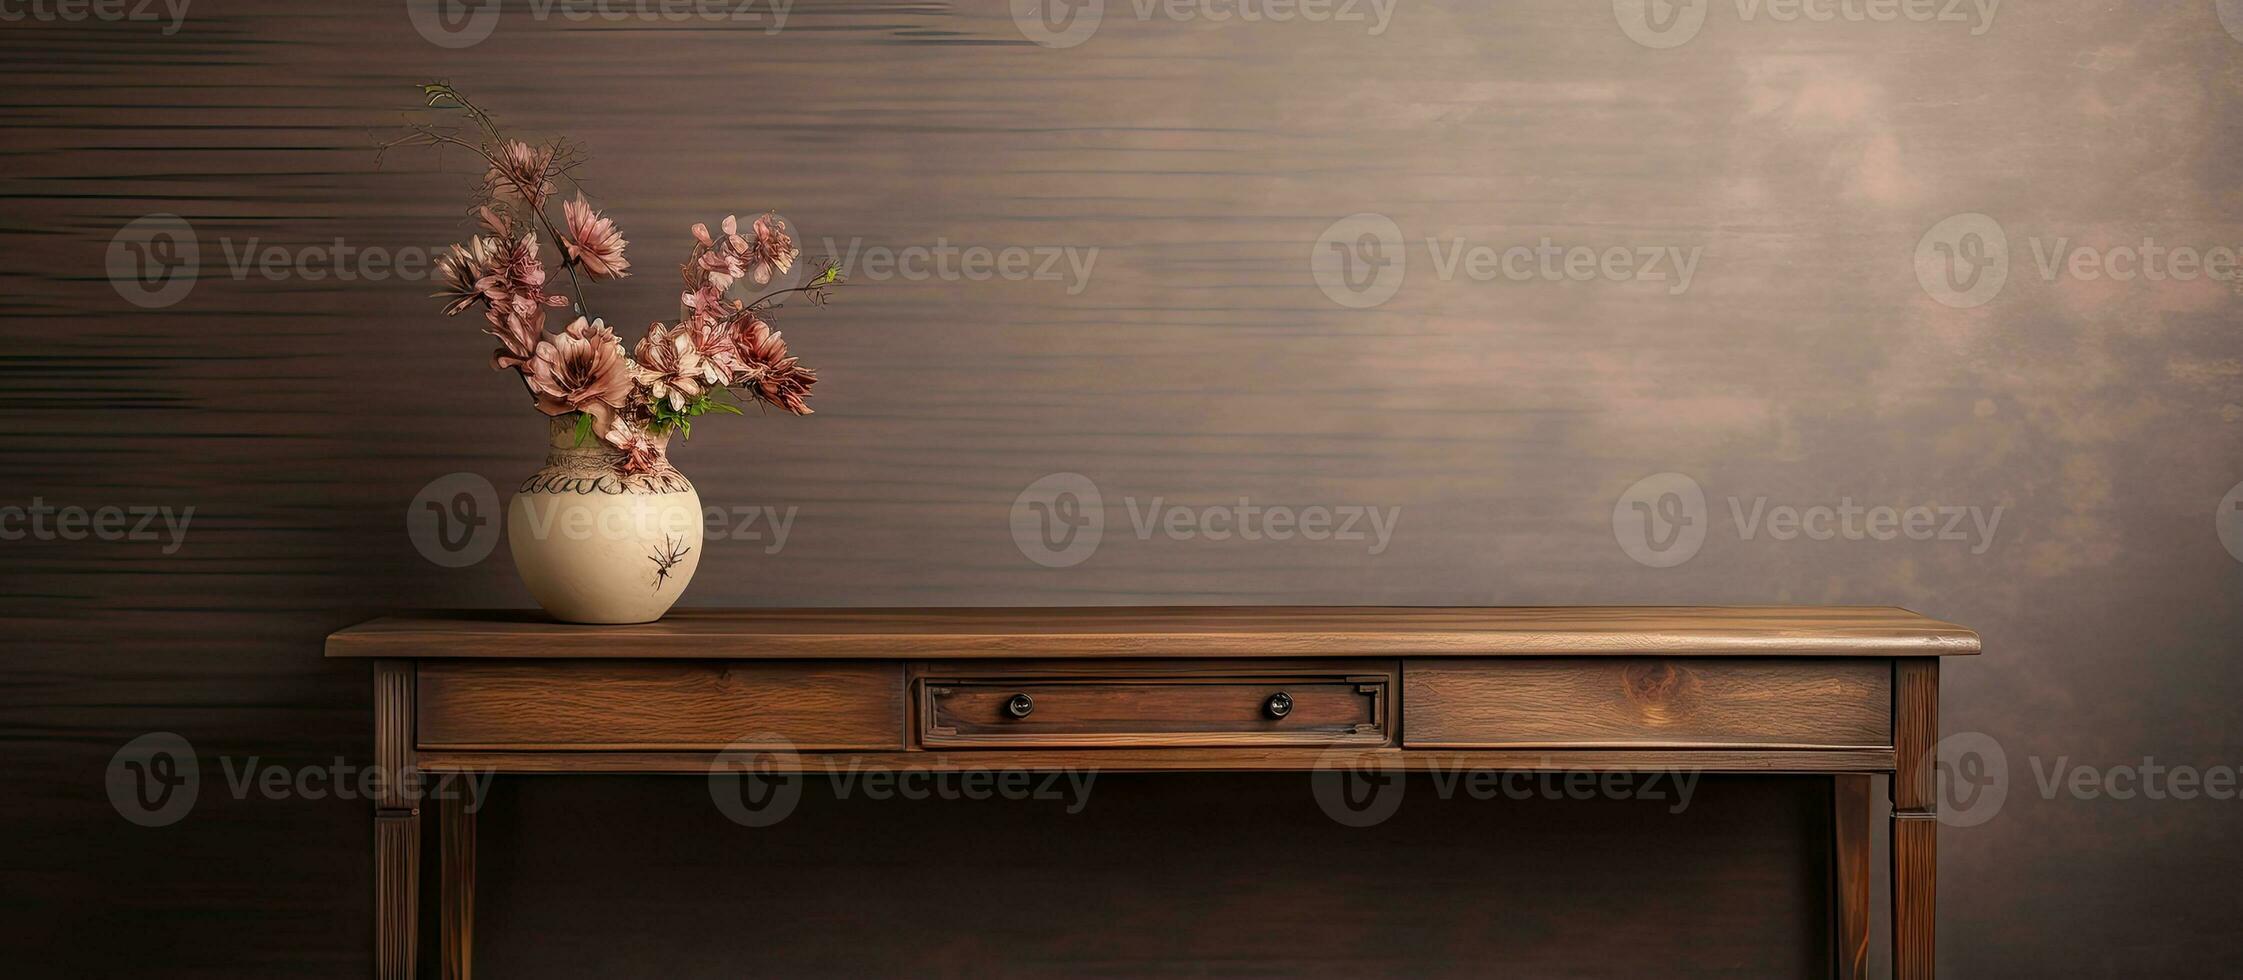 aislado consola mesa hecho de madera foto